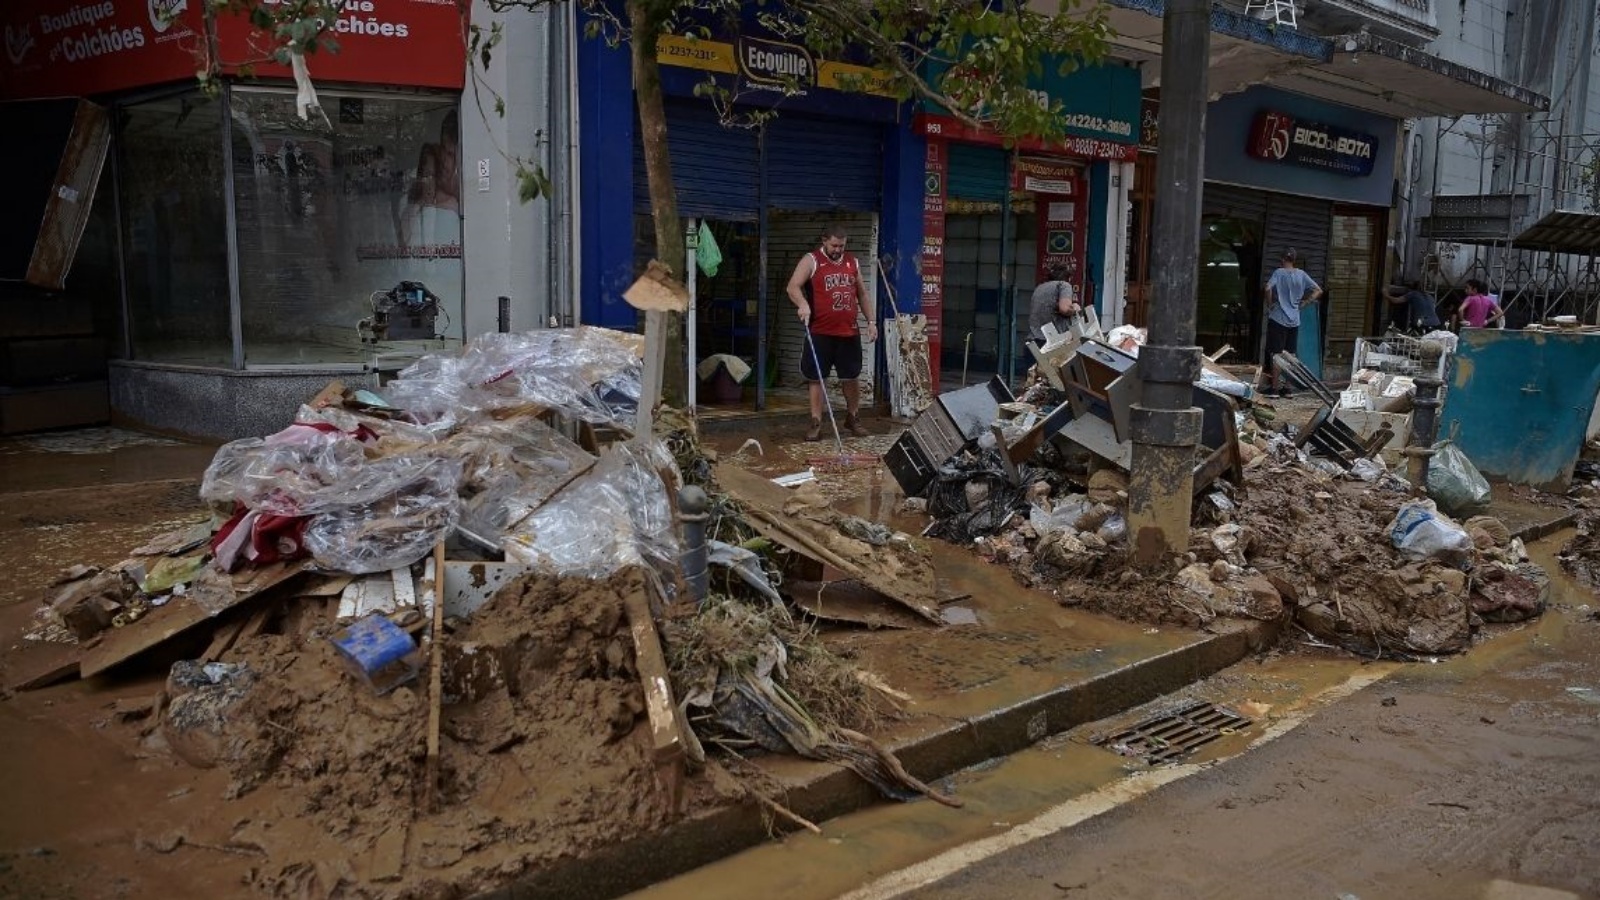 أصحاب المحال التجارية يعاينون الأضرار التي خلفتها الفيضانات، في مدينة بيتروبوليس البرازيلية